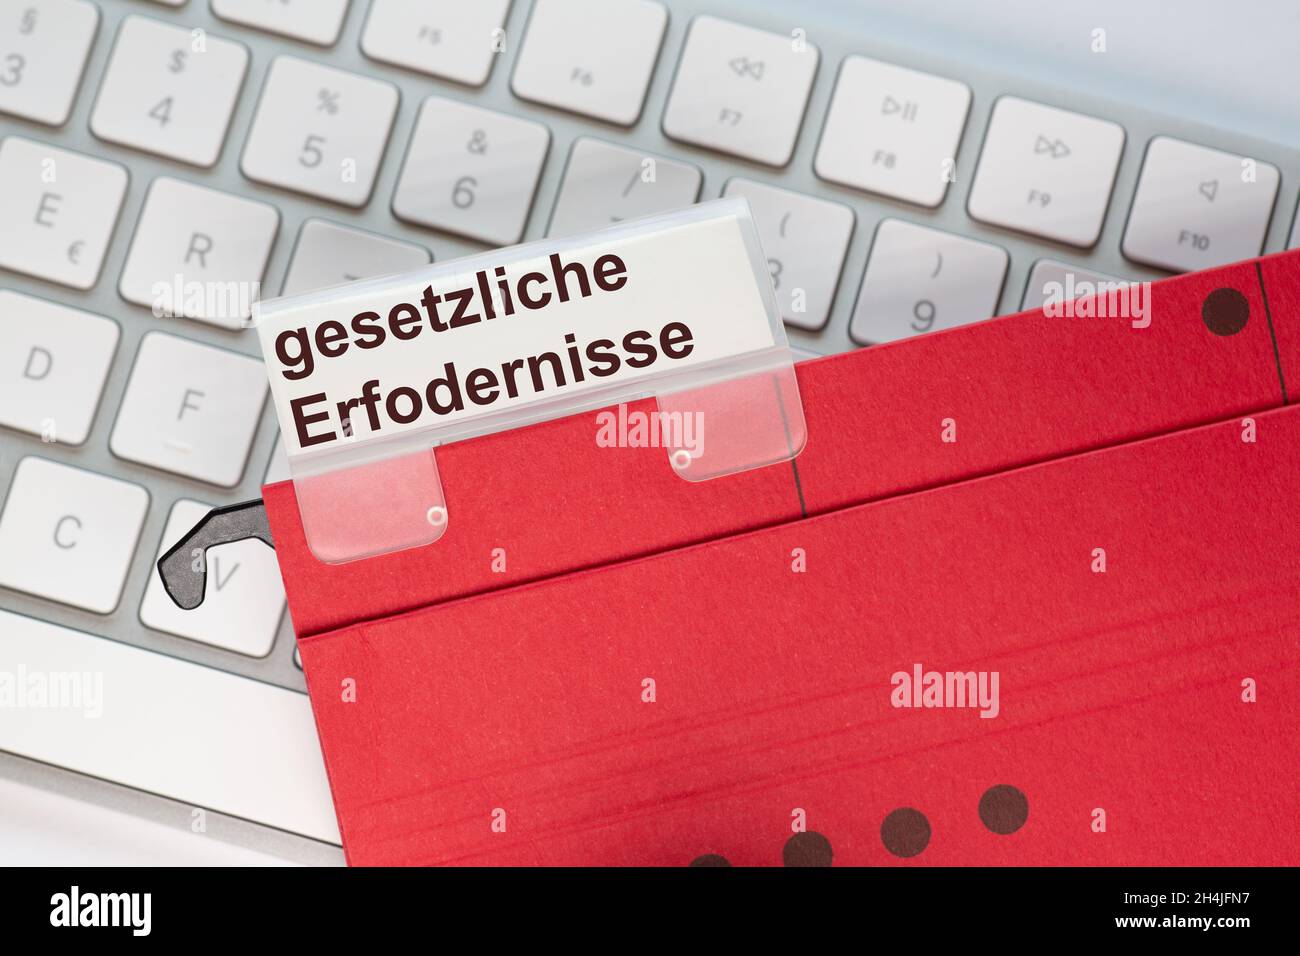 Die deutschen Wörter für gesetzliche Anforderungen sind auf dem Etikett einer roten Hängemappe zu sehen. Der Hängeordner befindet sich auf einer Computertastatur. Stockfoto